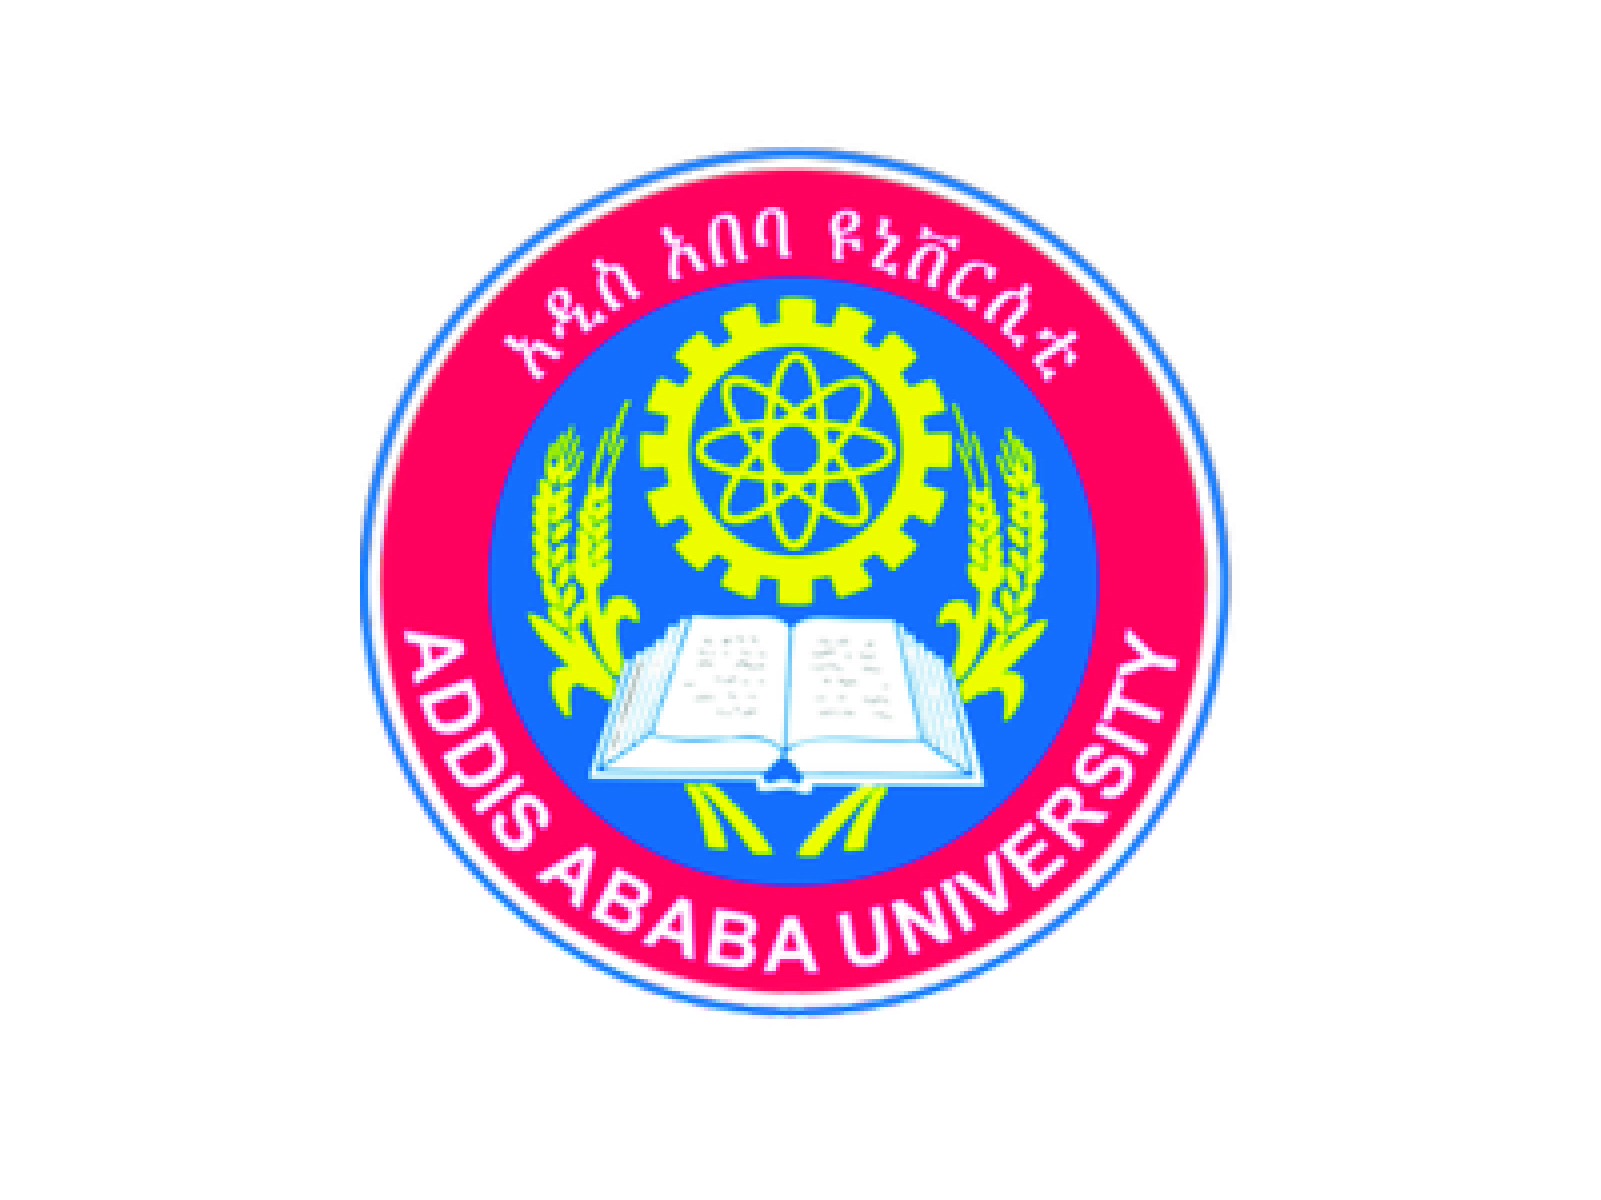 ADDIS ABABA UNIVERSITY